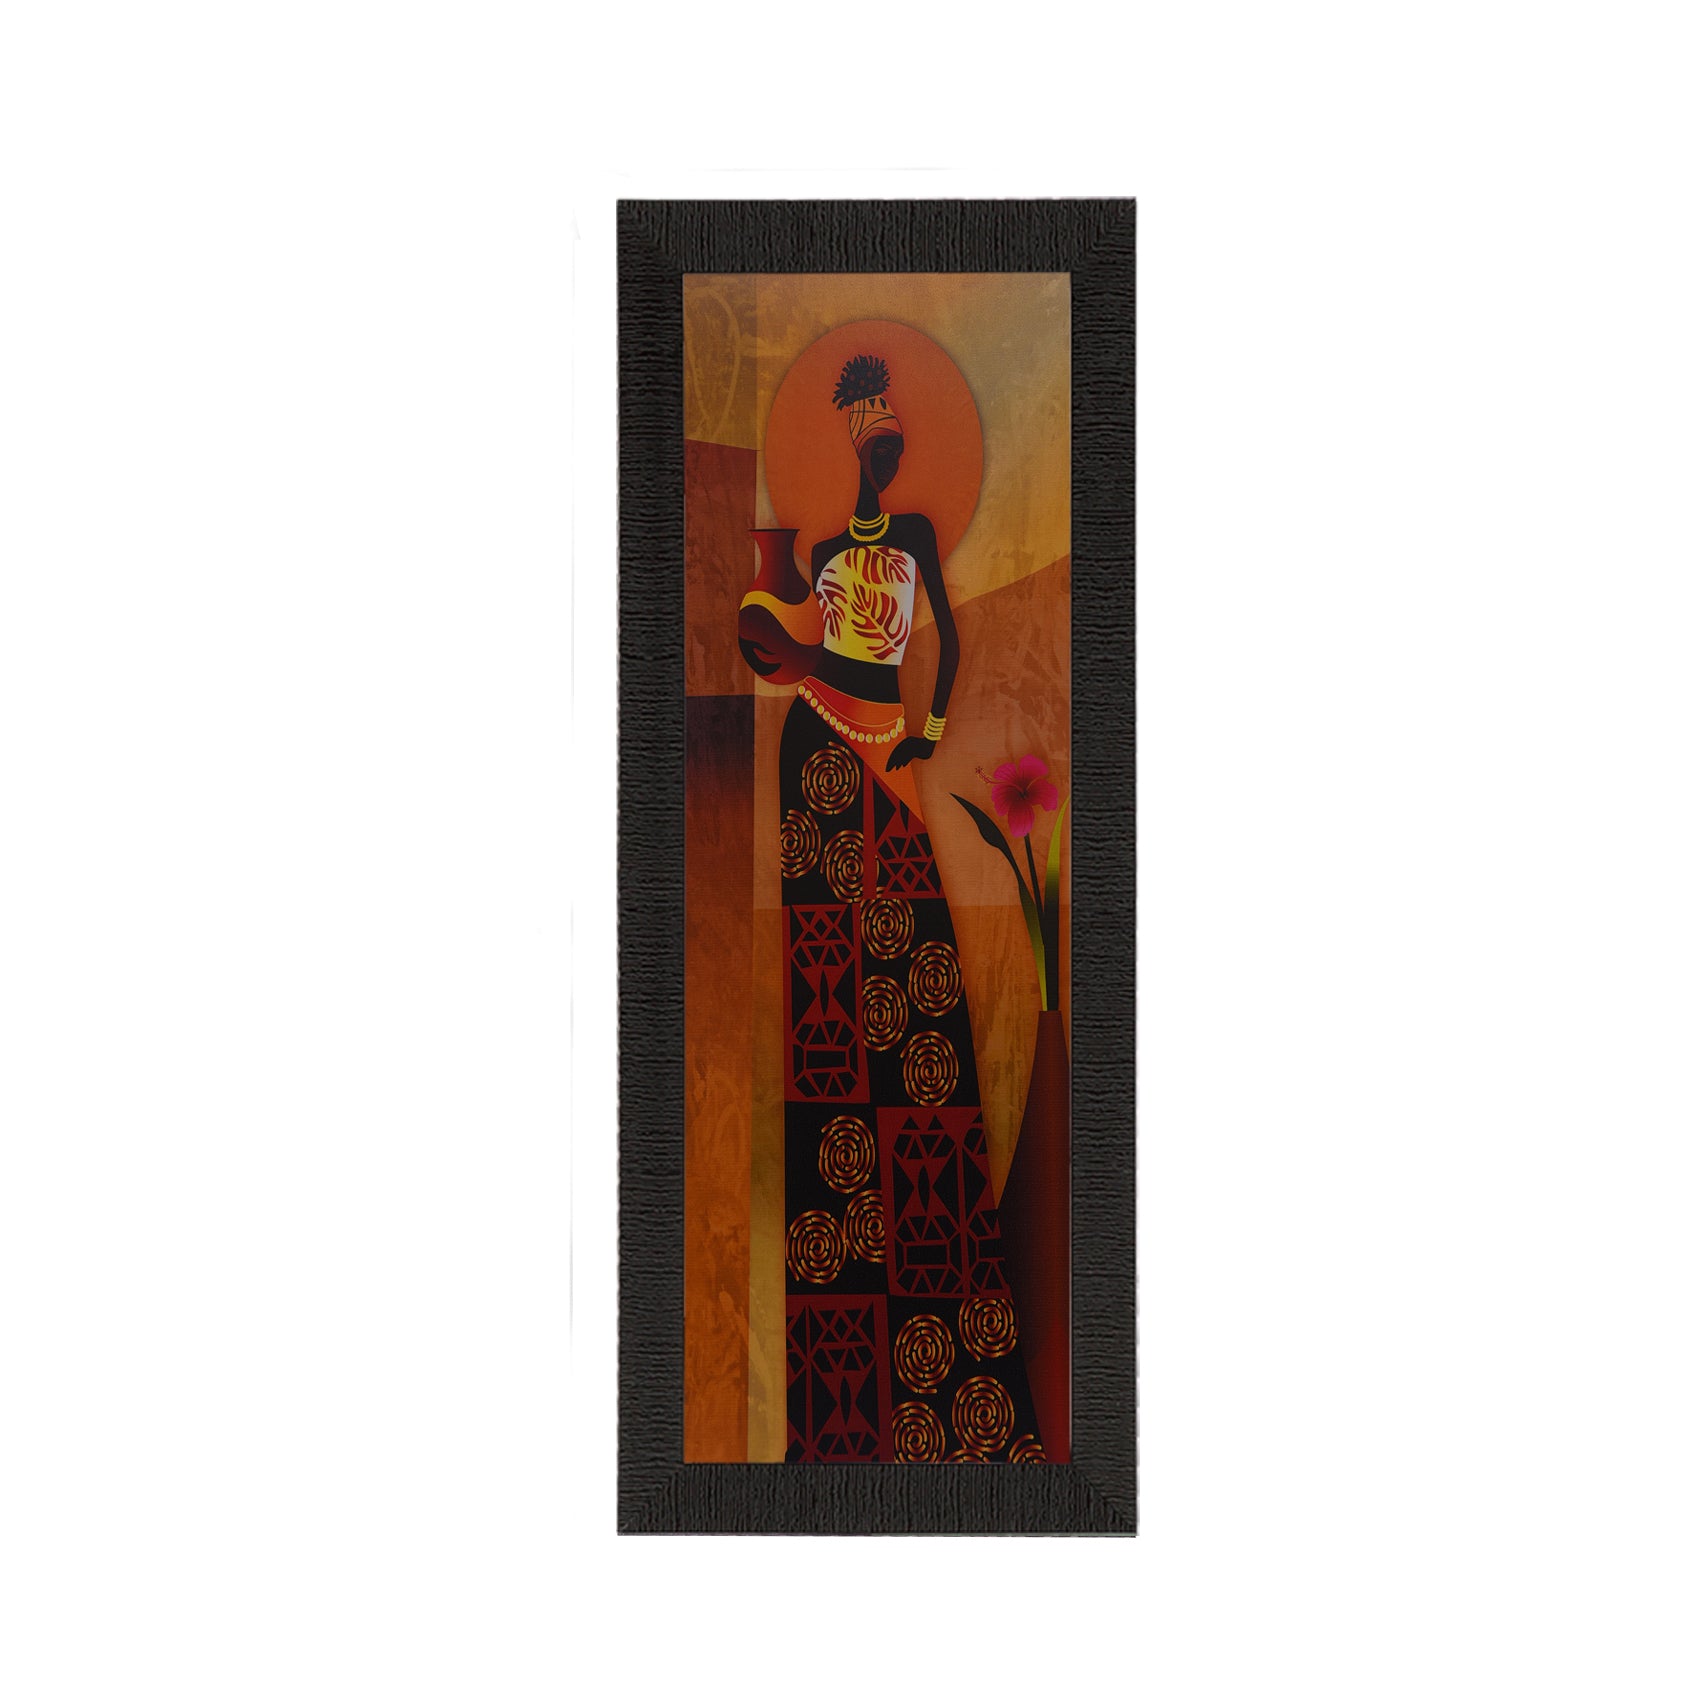 Tribal Woman With Vase Satin Matt Texture UV Art Painting